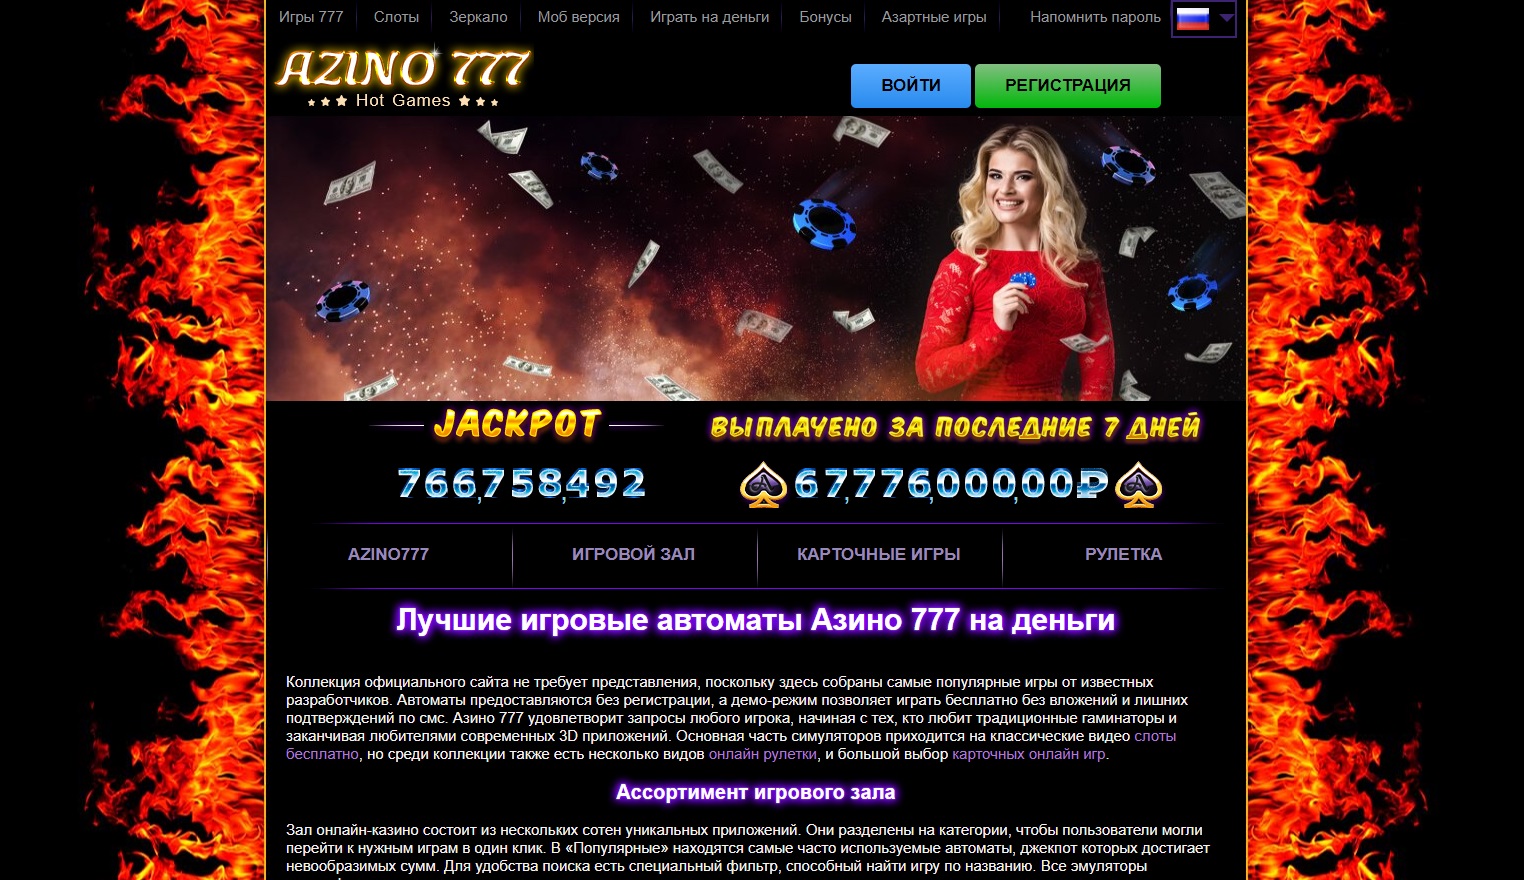 Azino777 сайт на сегодня azino777pro win. Игровые автоматы перчики. Азино 777 деньги на балансе. Популярная игра с перчиками автоматы. Азино 777 автомат отзывы реальных.